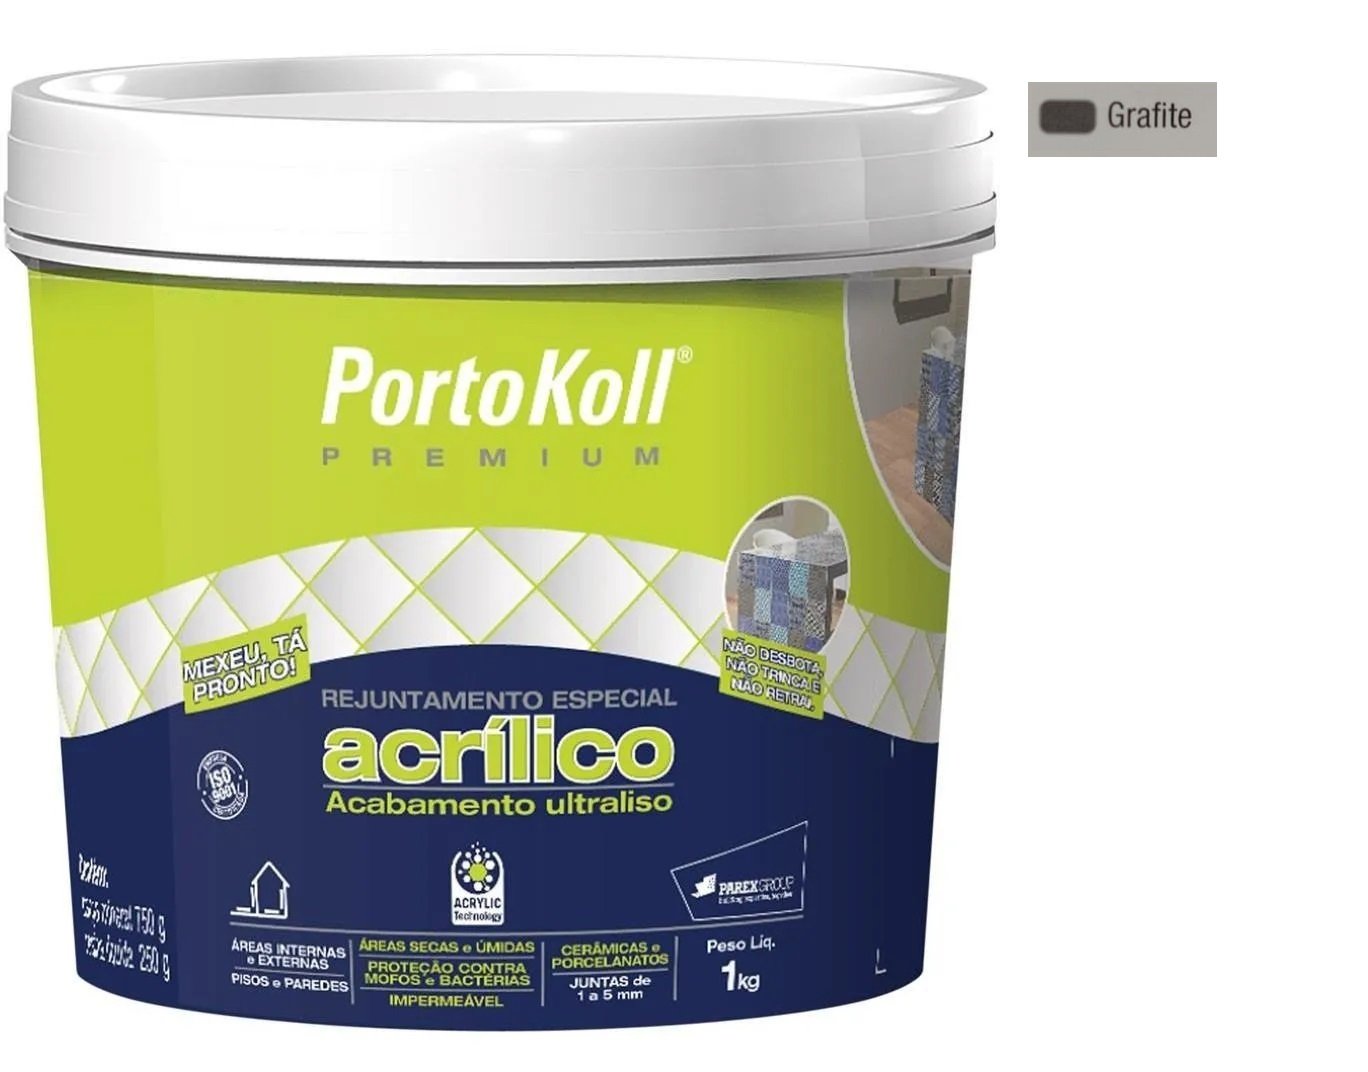 Rejunte Acrílico Portokoll Premium 1kg - GRAFITE